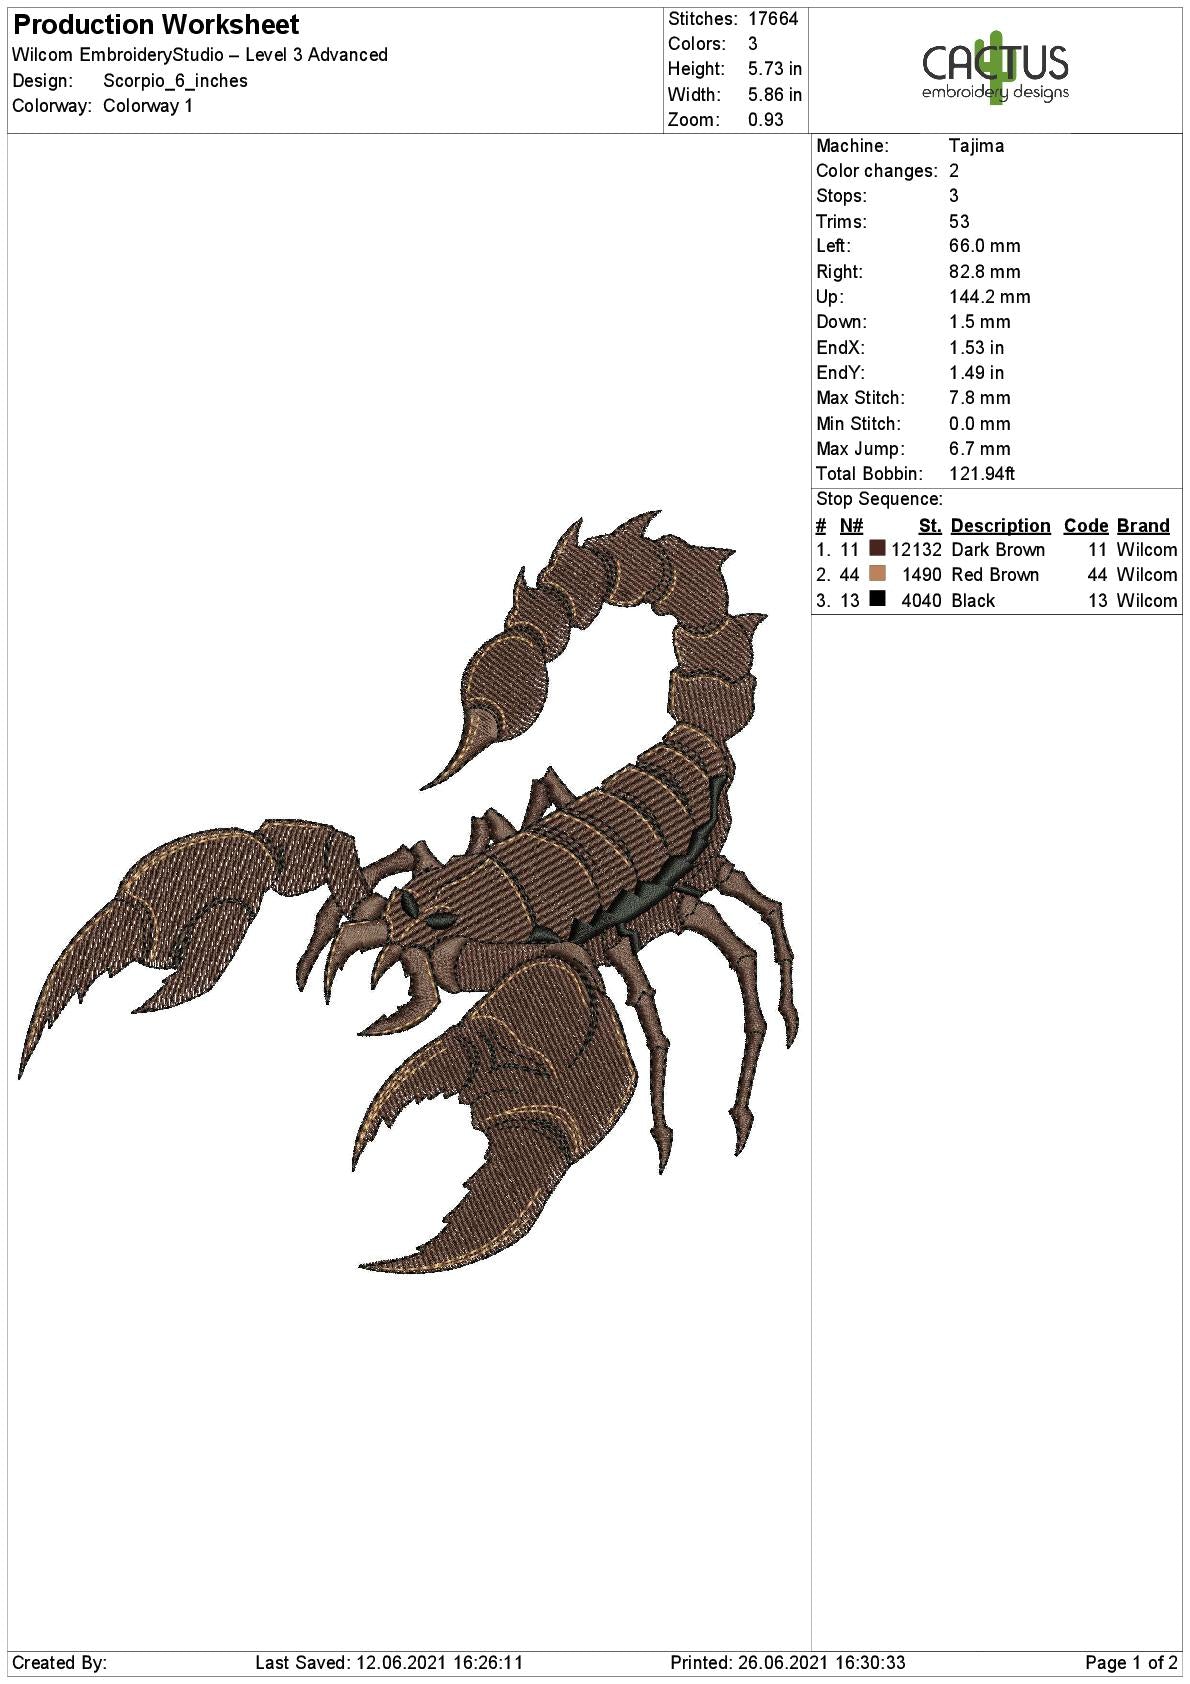 Scorpion Embroidery Design